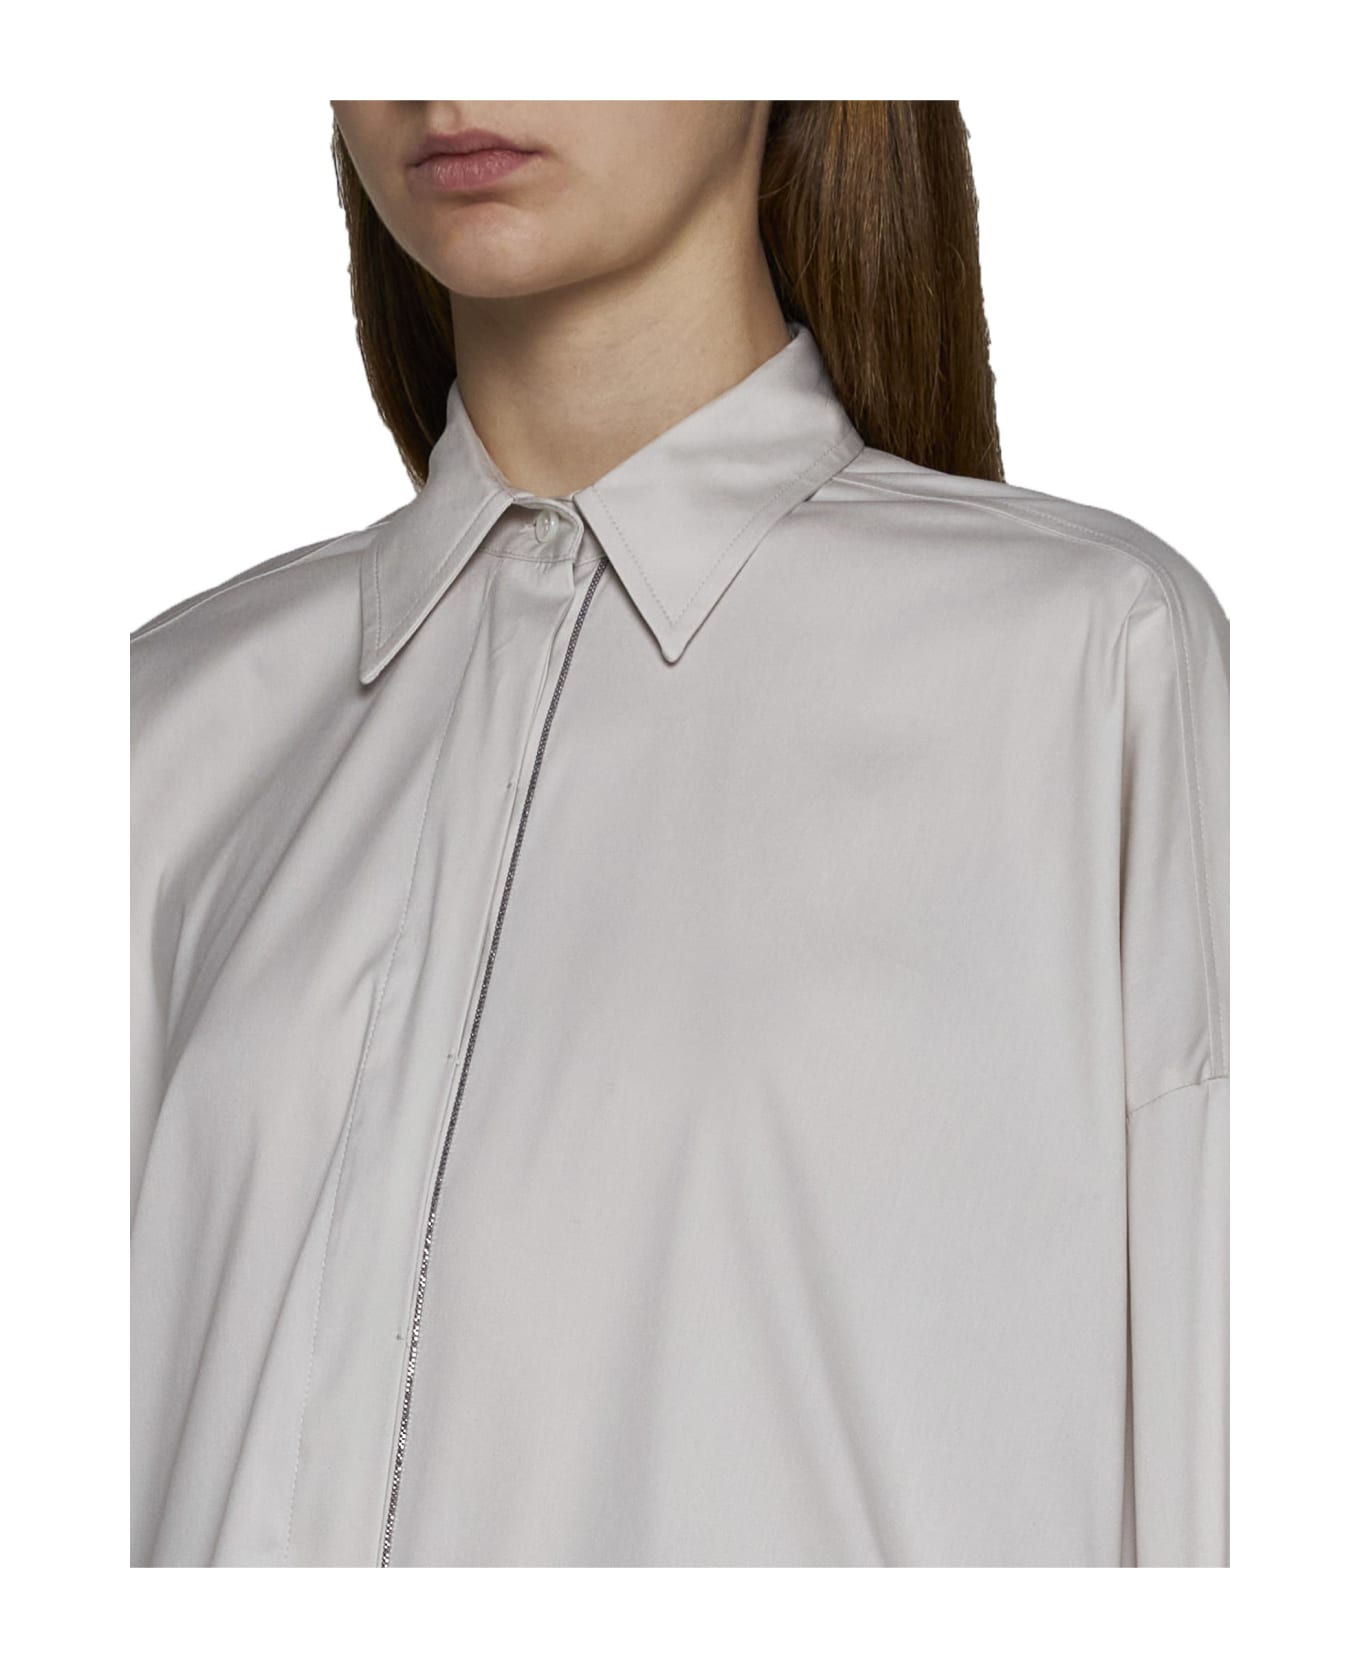 Brunello Cucinelli Shirt - Warm white